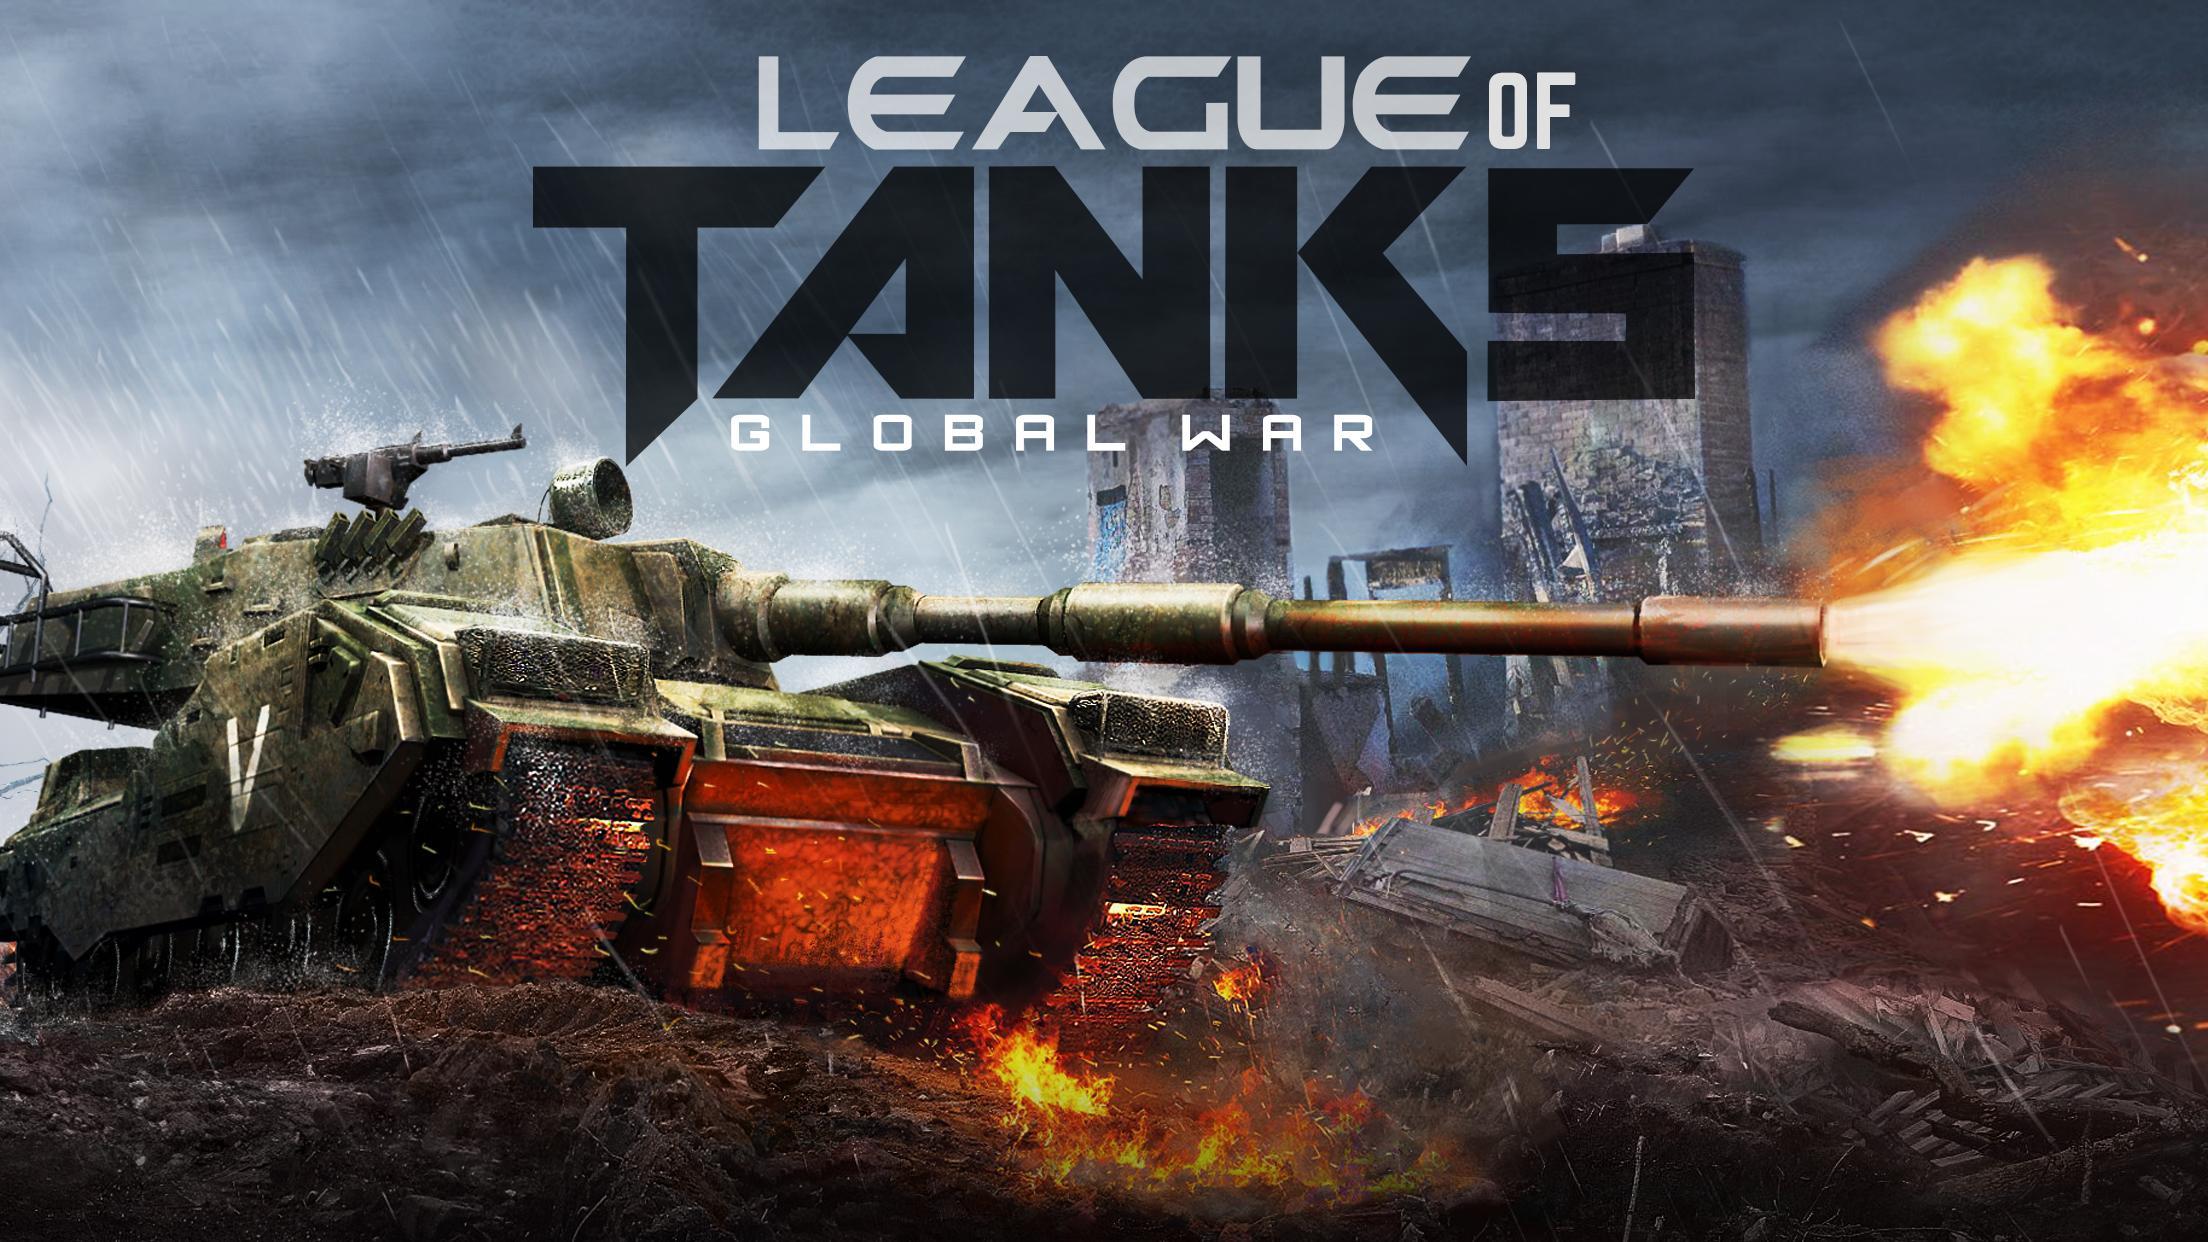 League of Tanks - Global Warのキャプチャ